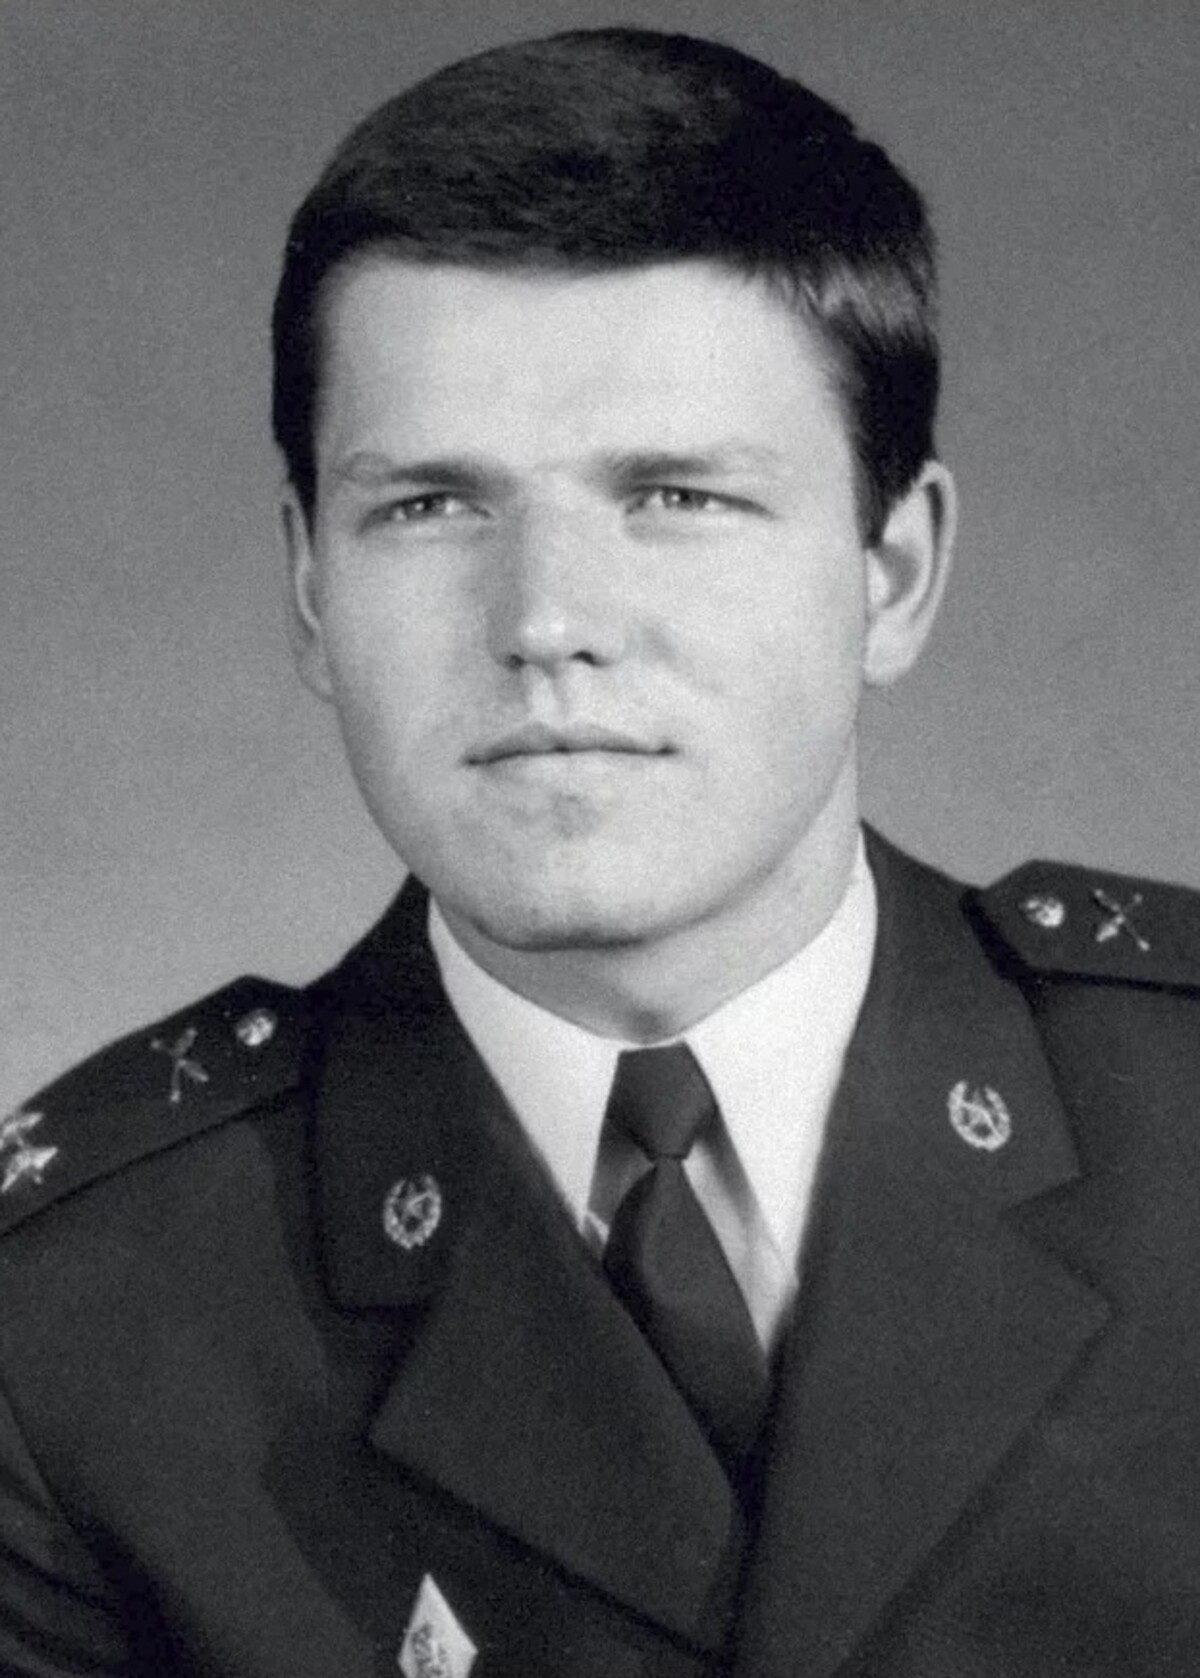 Petr Pavel se narodil v roce 1961 v Plané u Mariánských Lázní do rodiny příslušníka Československé lidové armády. Po vystudování Vojenského gymnázia v Opavě pokračoval studiem na Vysoké vojenské škole pozemního vojska ve Vyškově. V roce 1983 nastoupil k výsadkovému vojsku a v letech 1985 až 1989 byl členem KSČ.